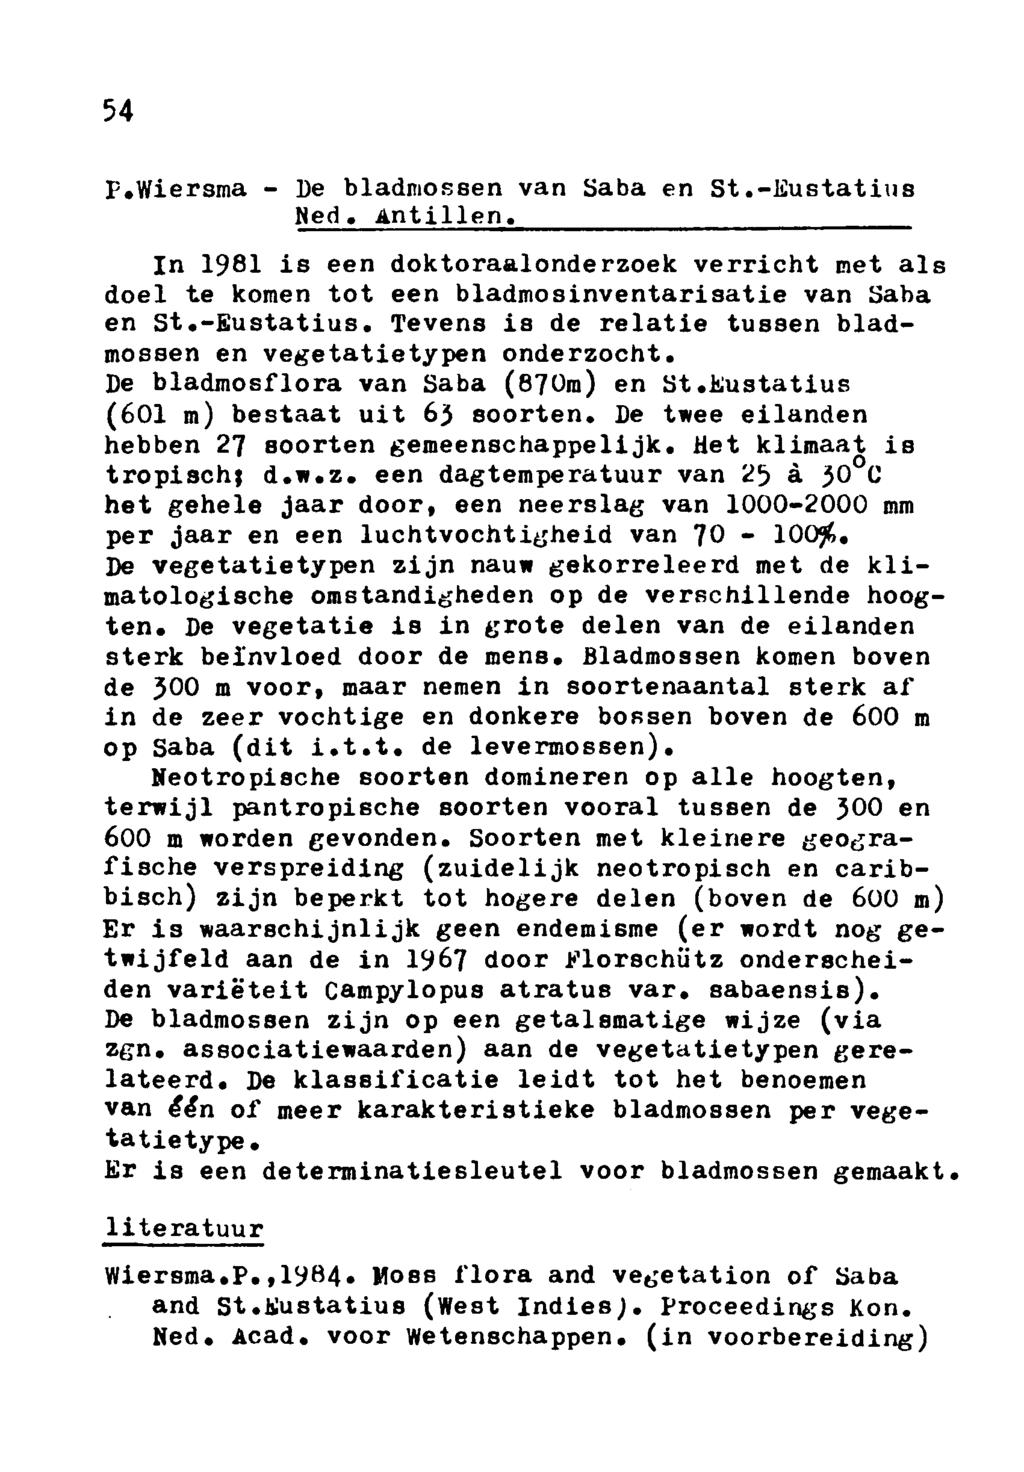 54 P. Wiersma De bladmossen van Saba en St.Eustatius Ned. Antillen. In 1981 is een doktoraalonderzoek verricht met als doel te komen tot een bladmosinventarisatie van Saba en St.Eustatius. Tevens is de relatie tussen bladmossen en vegetatietypen onderzocht.